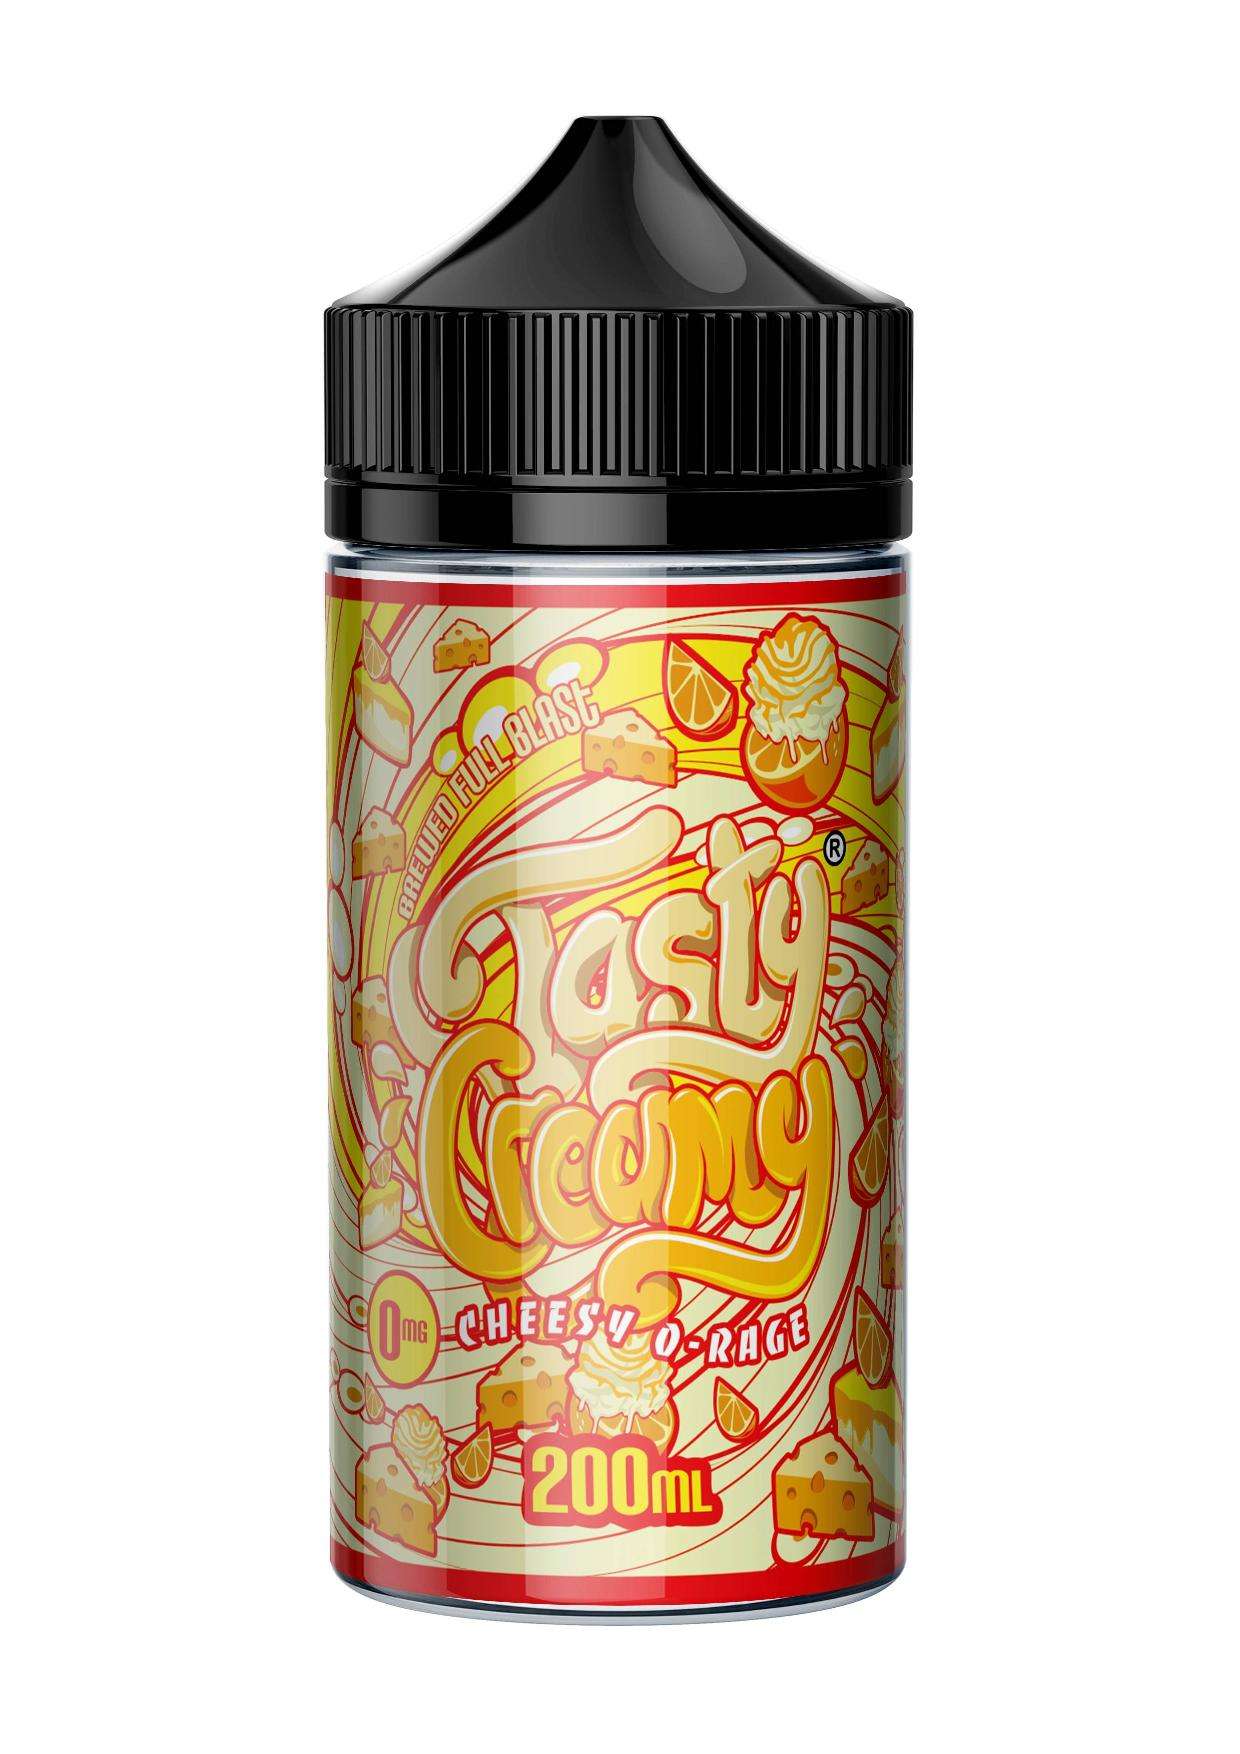  Tasty Creamy - Cheesy O’Rage - 200ml 